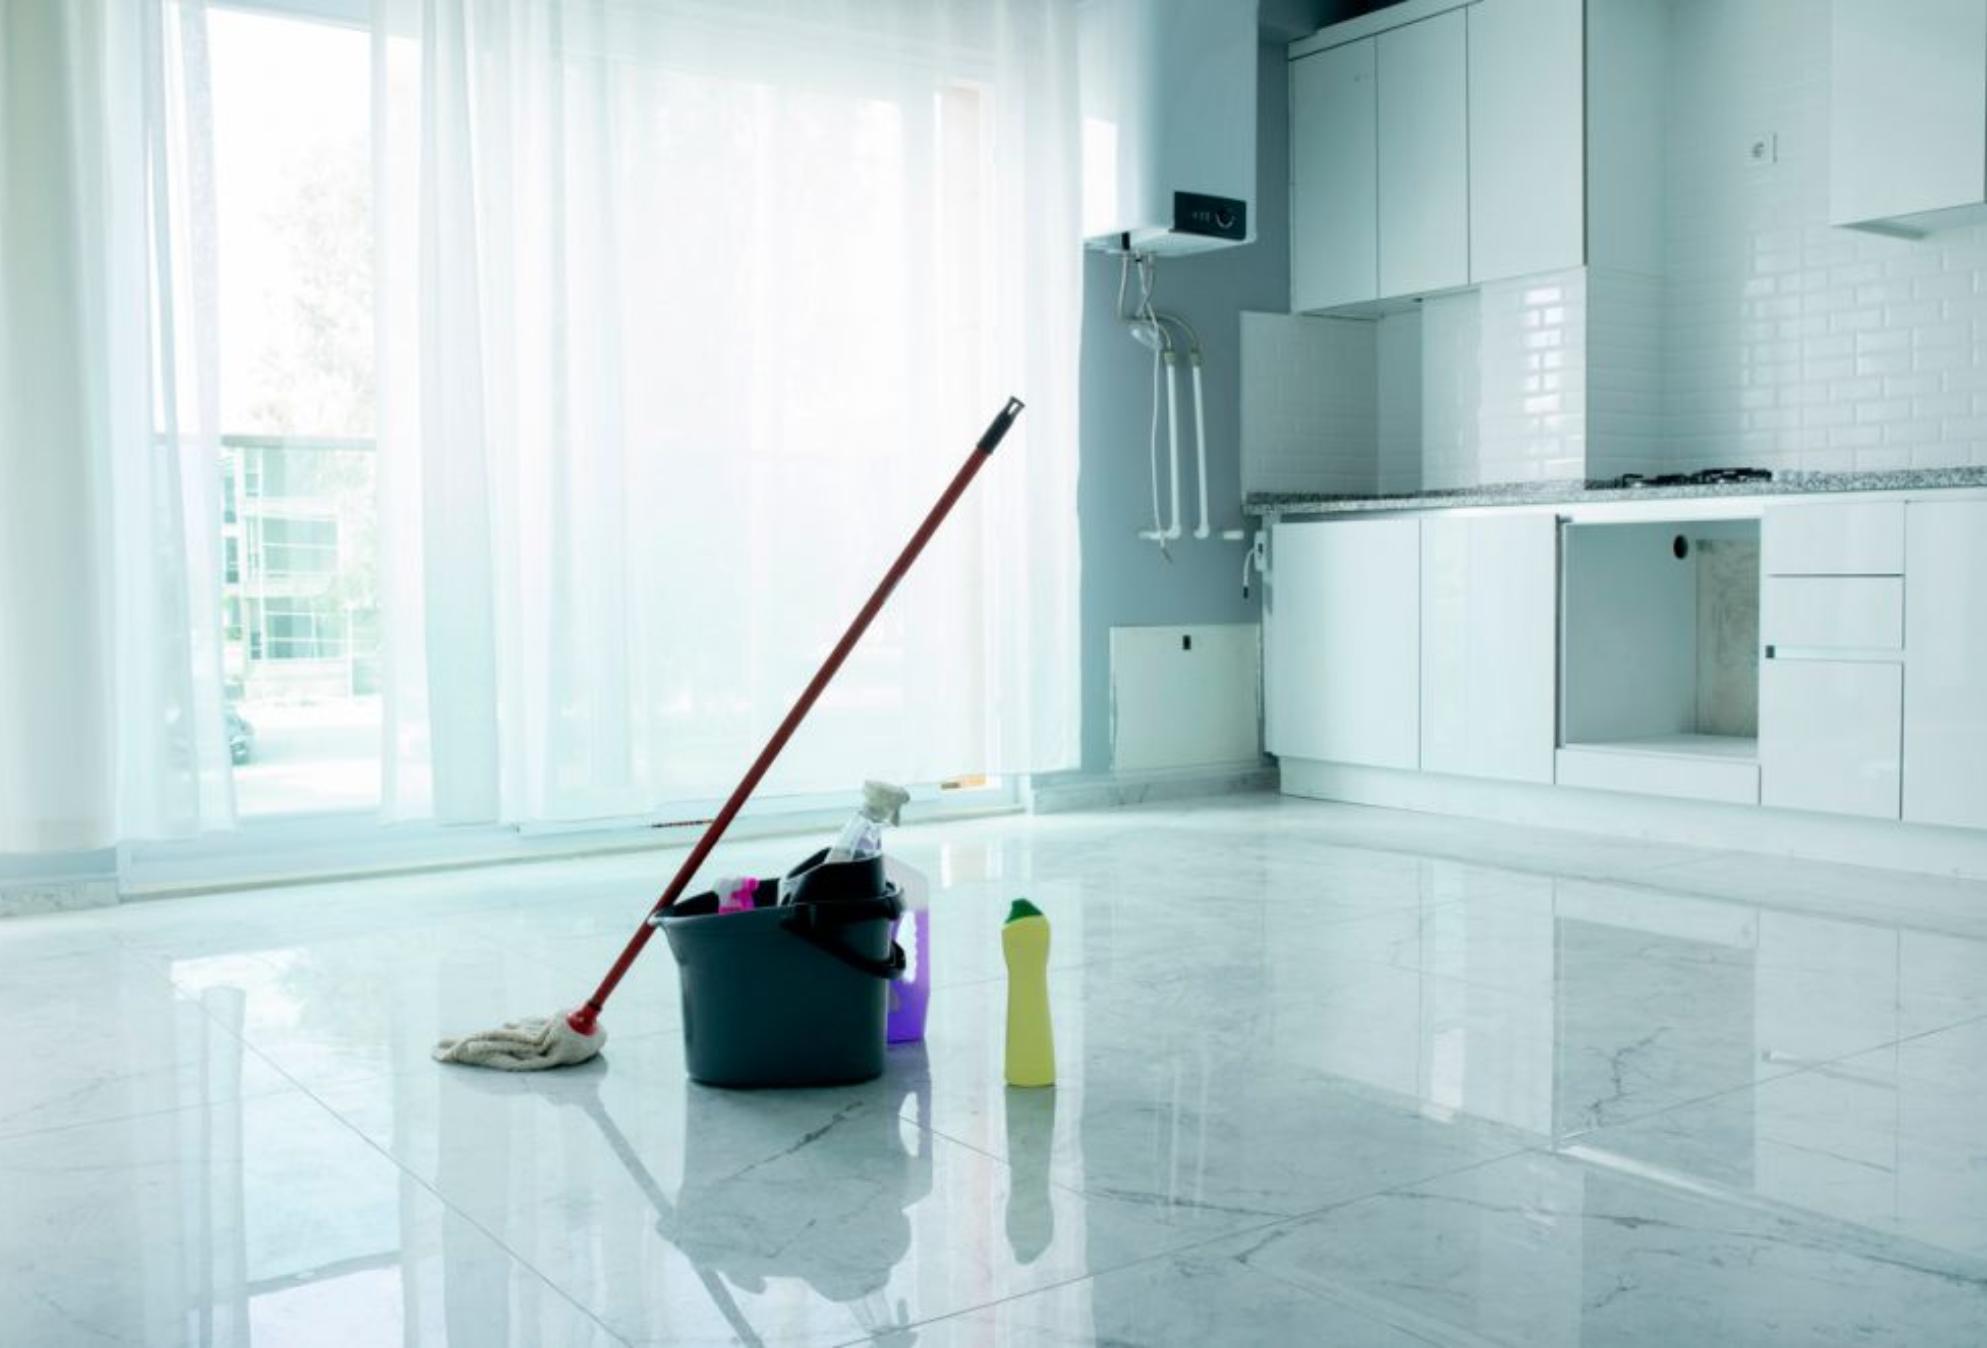 Καθαρίστε το σπίτι σας με την μέθοδο του ετοιμοθάνατου η αλλιώς döstädning βήμα – βήμα